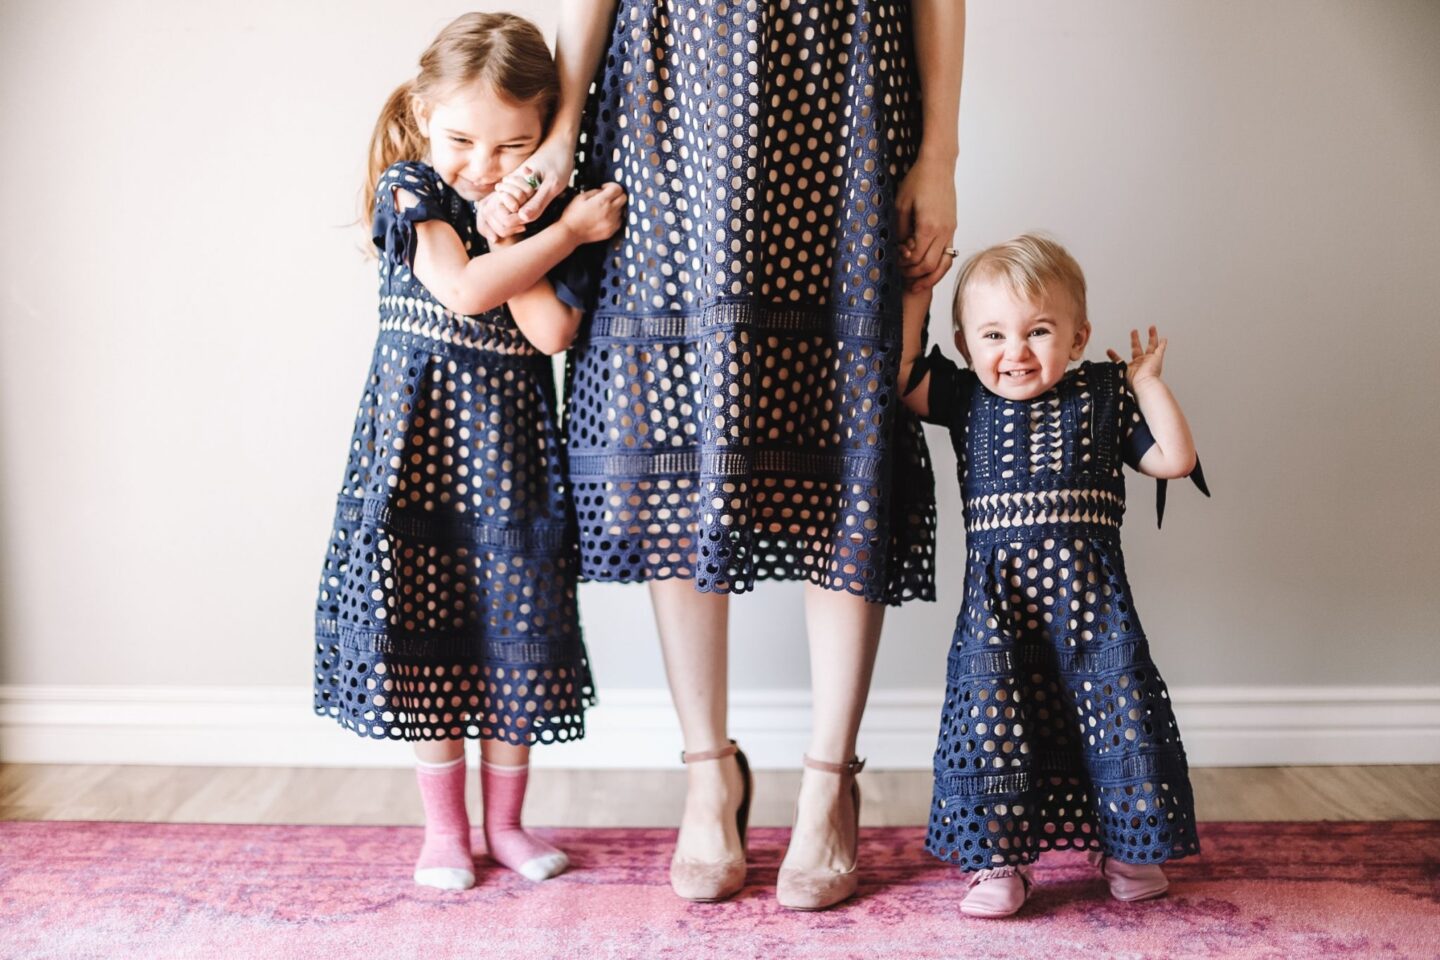 matching dresses + raising girls